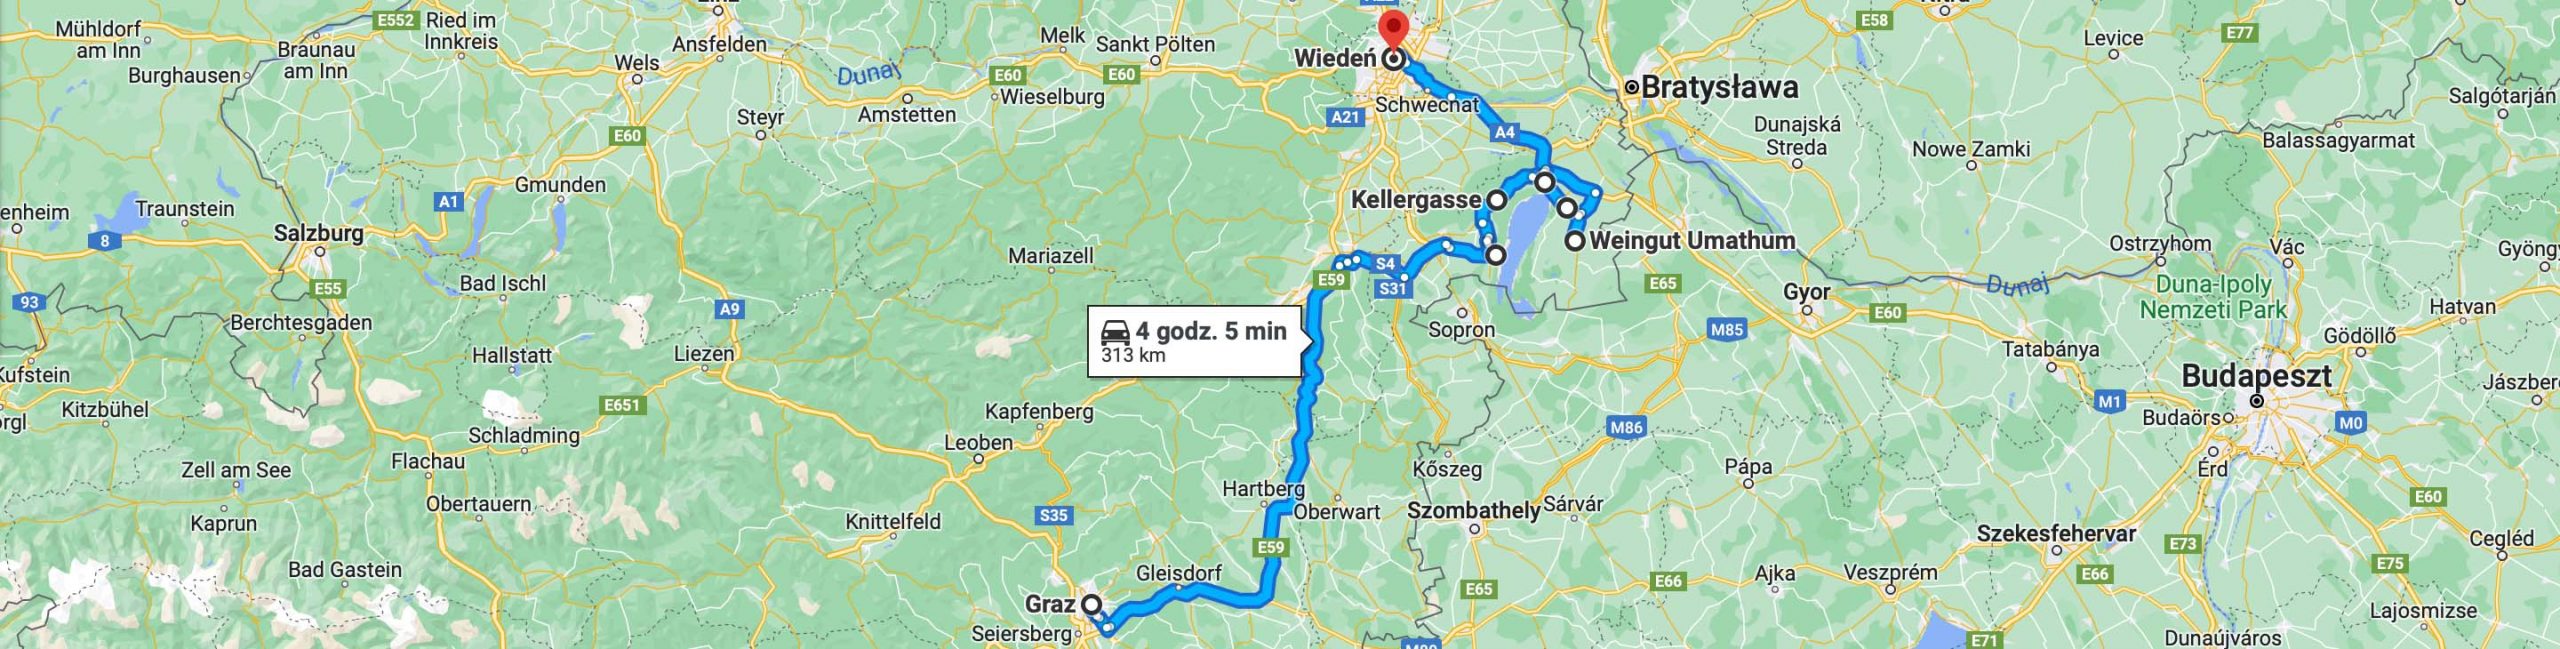 Trasa z Graz do Wiednia przez Burgenland